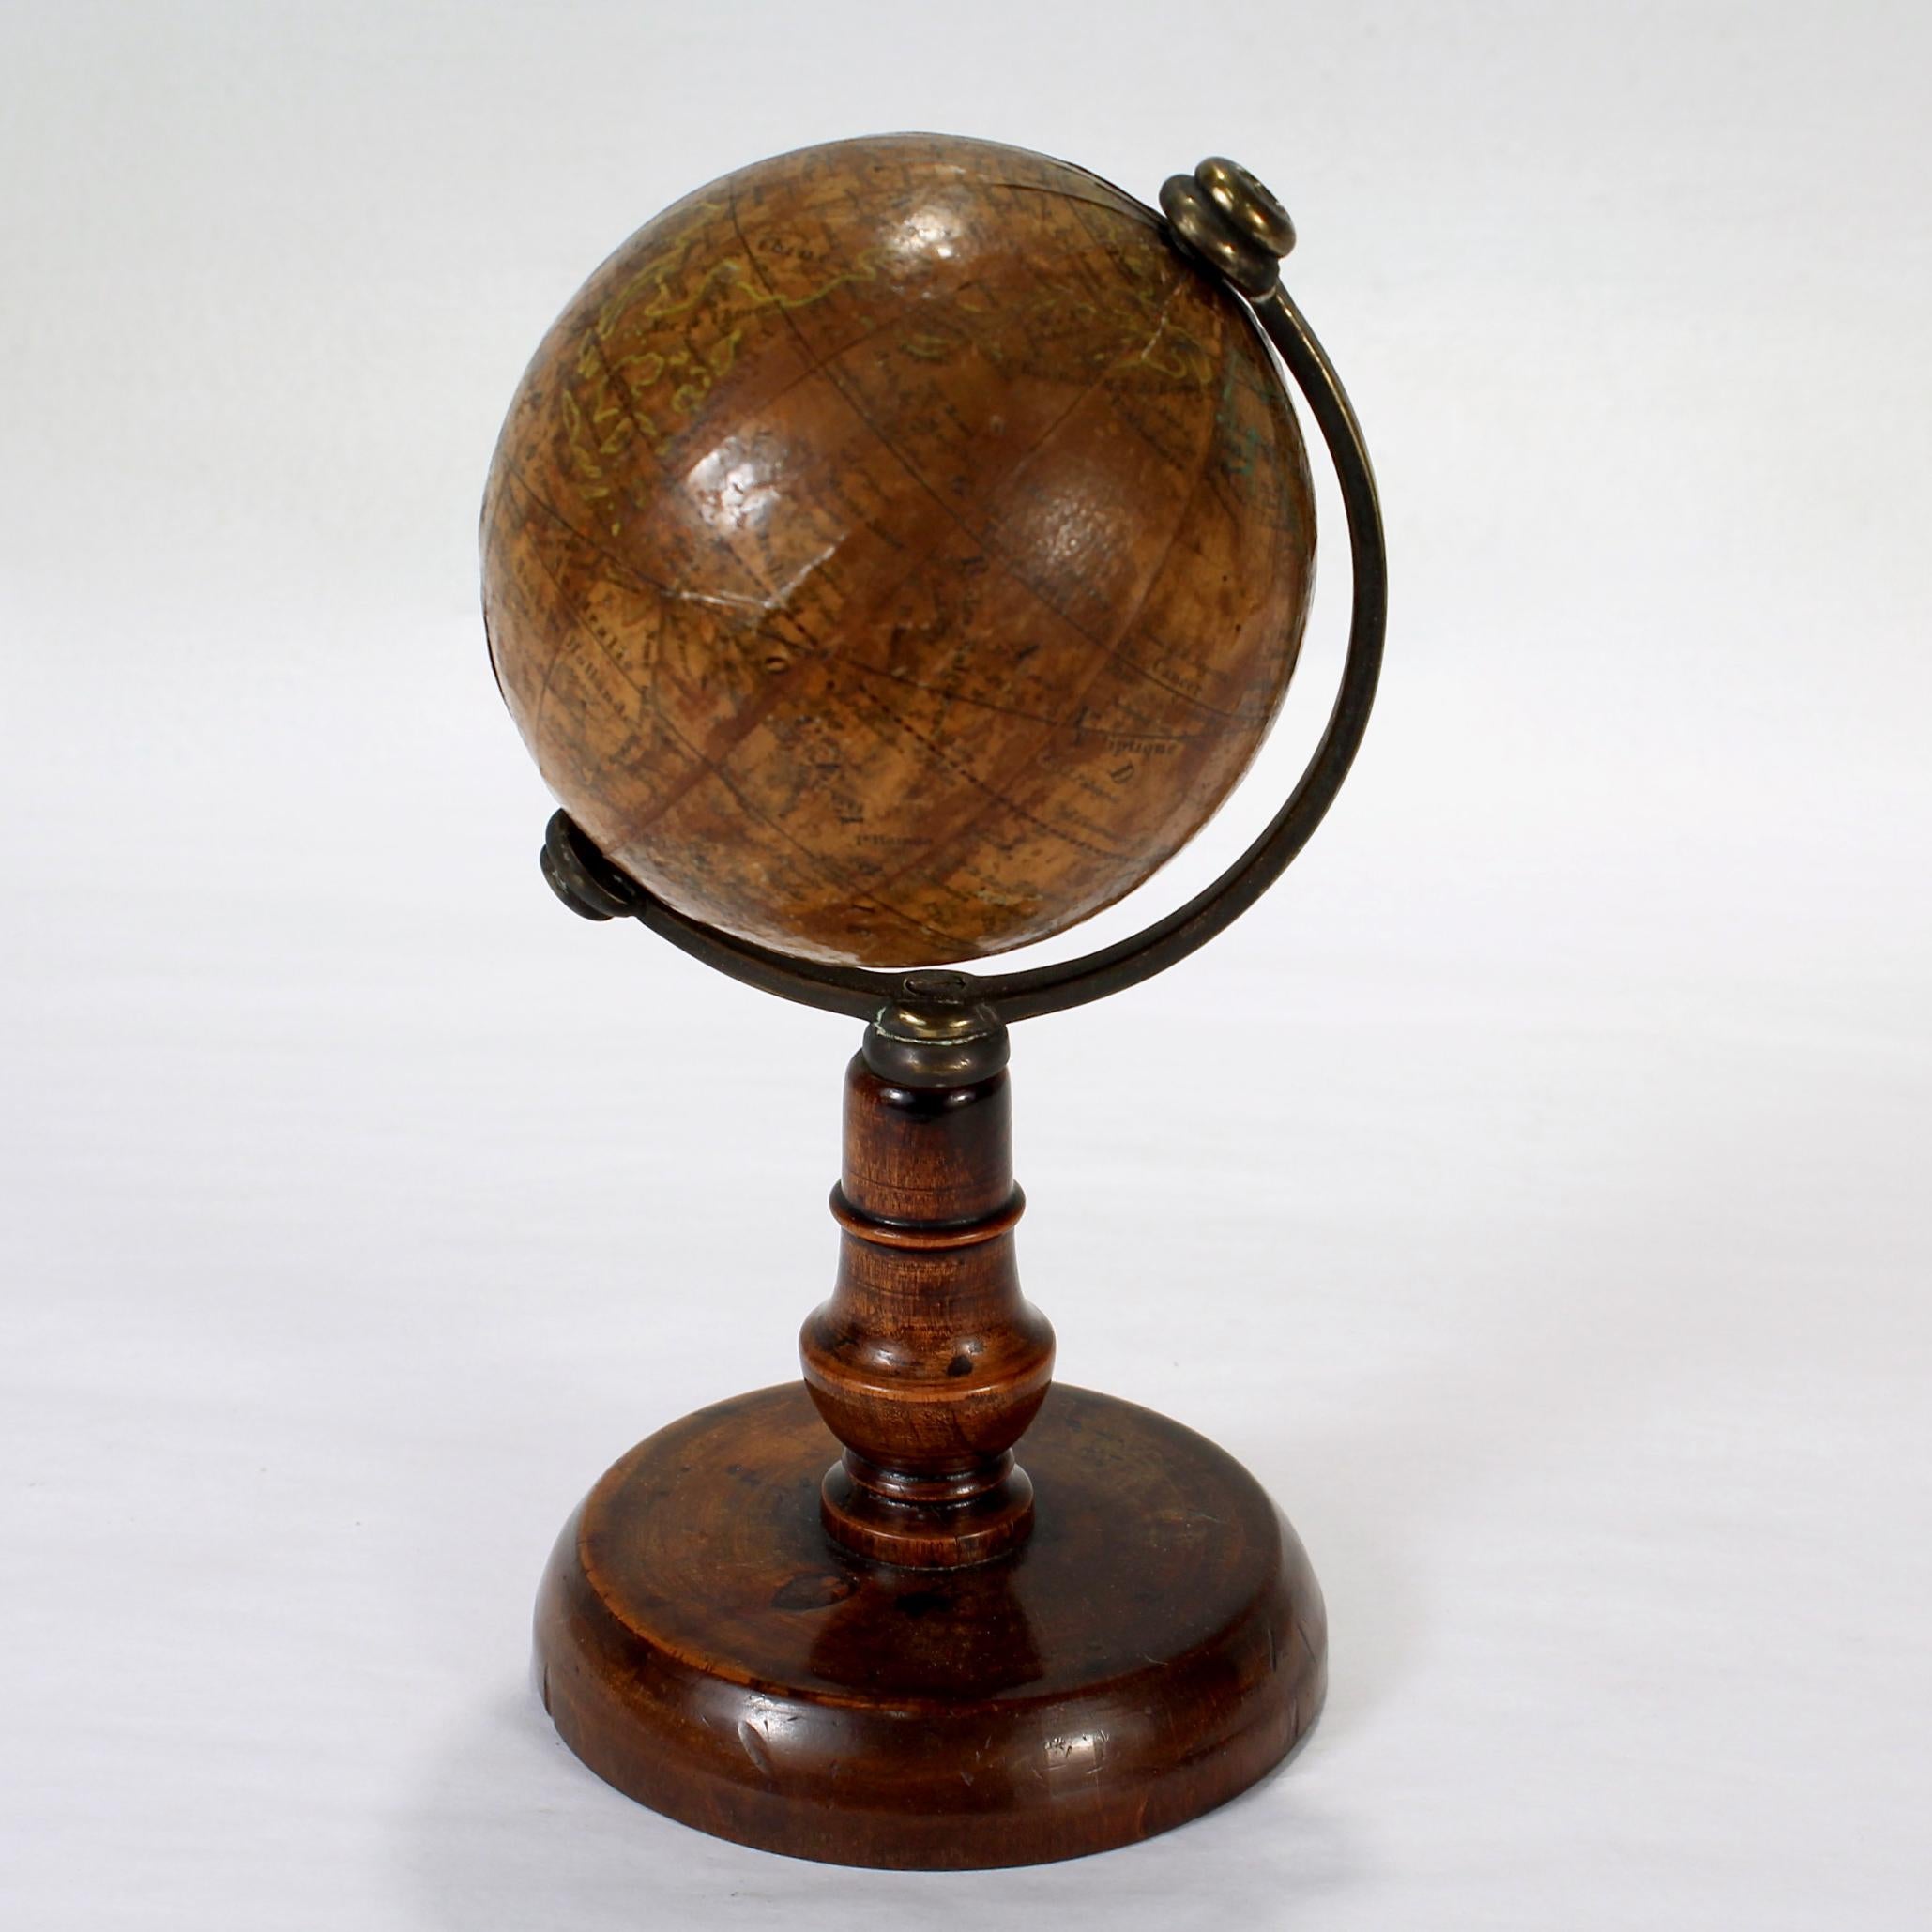 Un globe miniature ancien de l'édition française.

Par C.I.C..

Sur un support en bois tourné avec un demi-méridien en laiton non calibré. 

Le globe est marqué d'une étiquette intégrale indiquant 